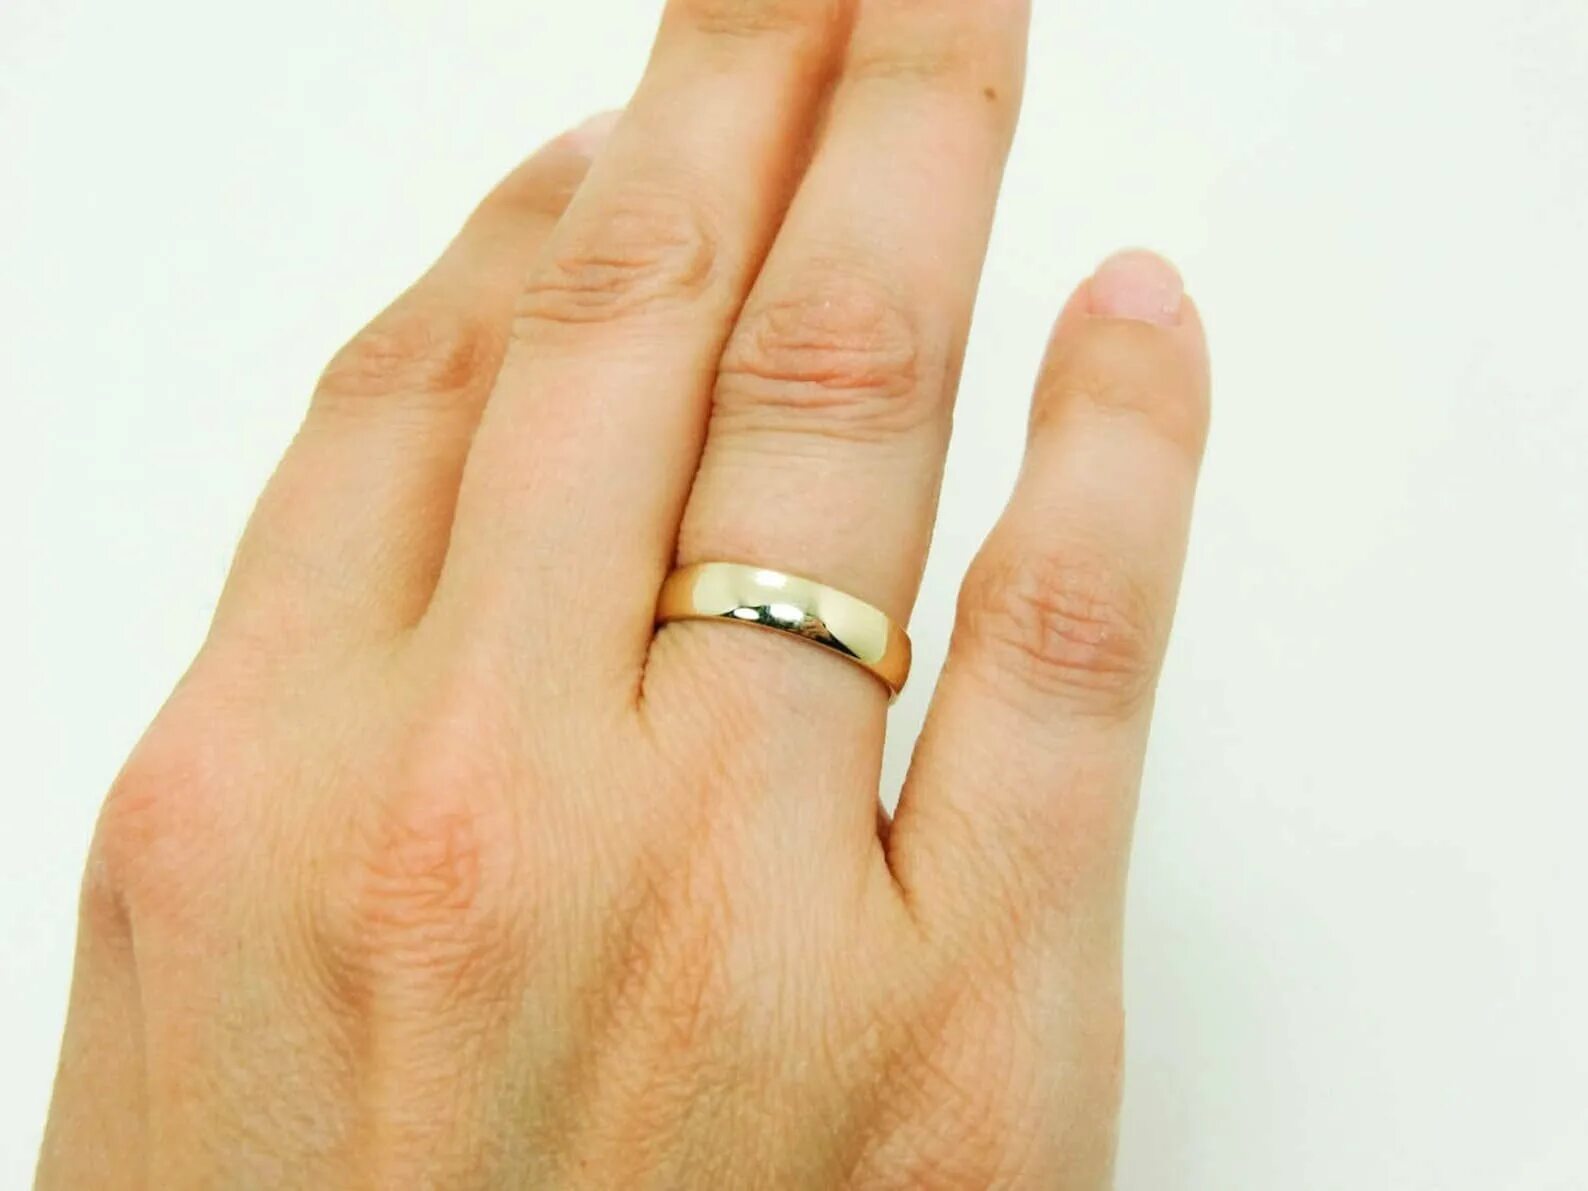 Кольцо будь проще. Обручальное кольцо на пальце. Мужские обручальные кольца на руке. Мужское обручальное кольцо на пальце. Кольцо на палец мужское.